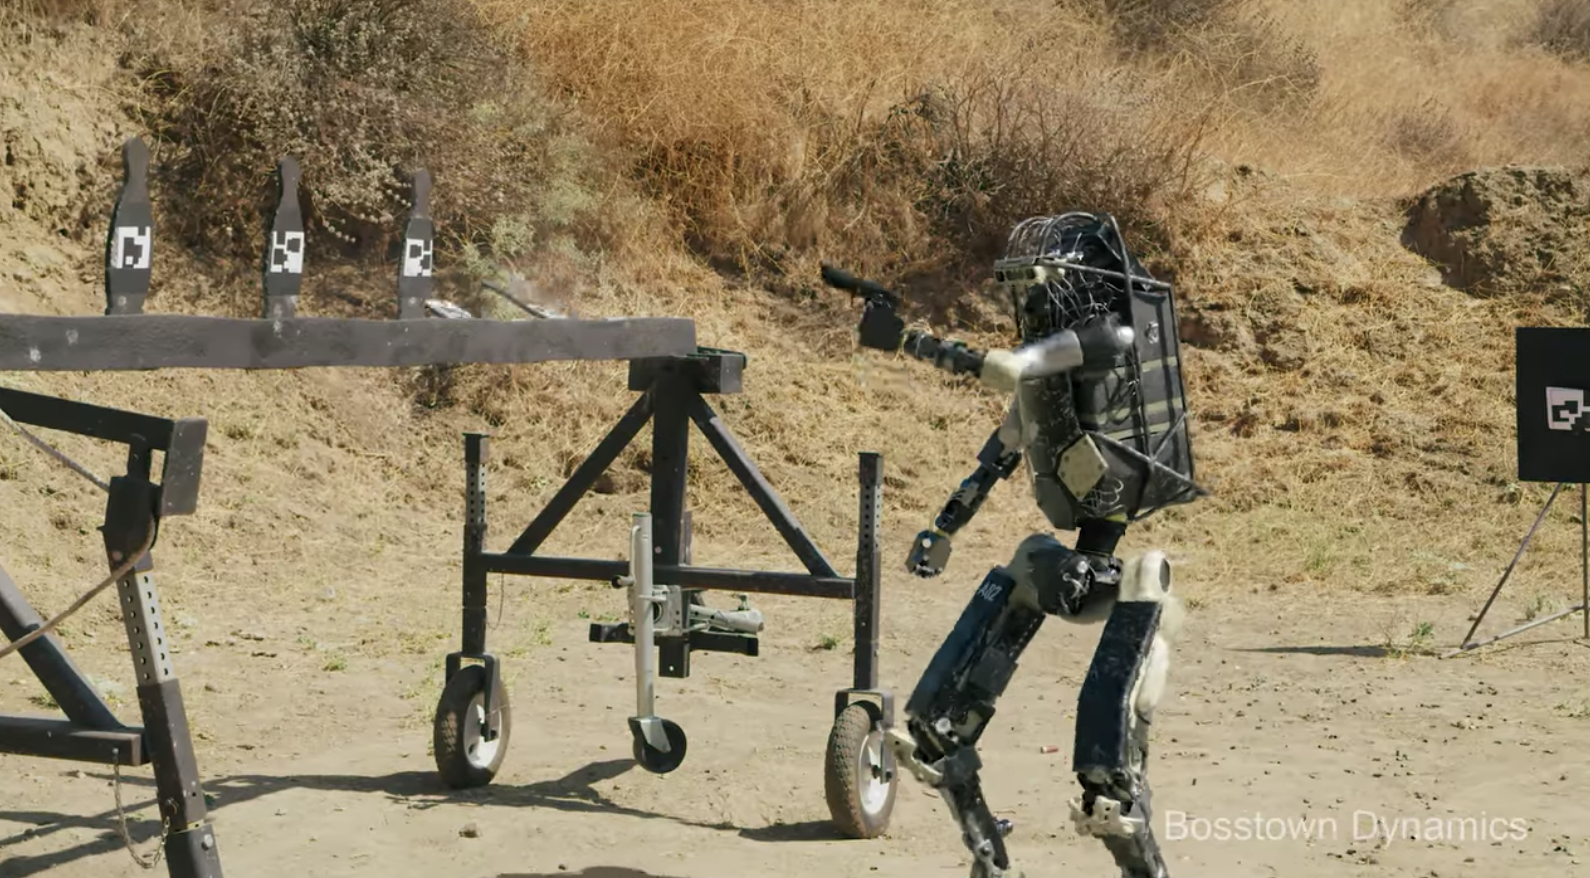 robot fight robot